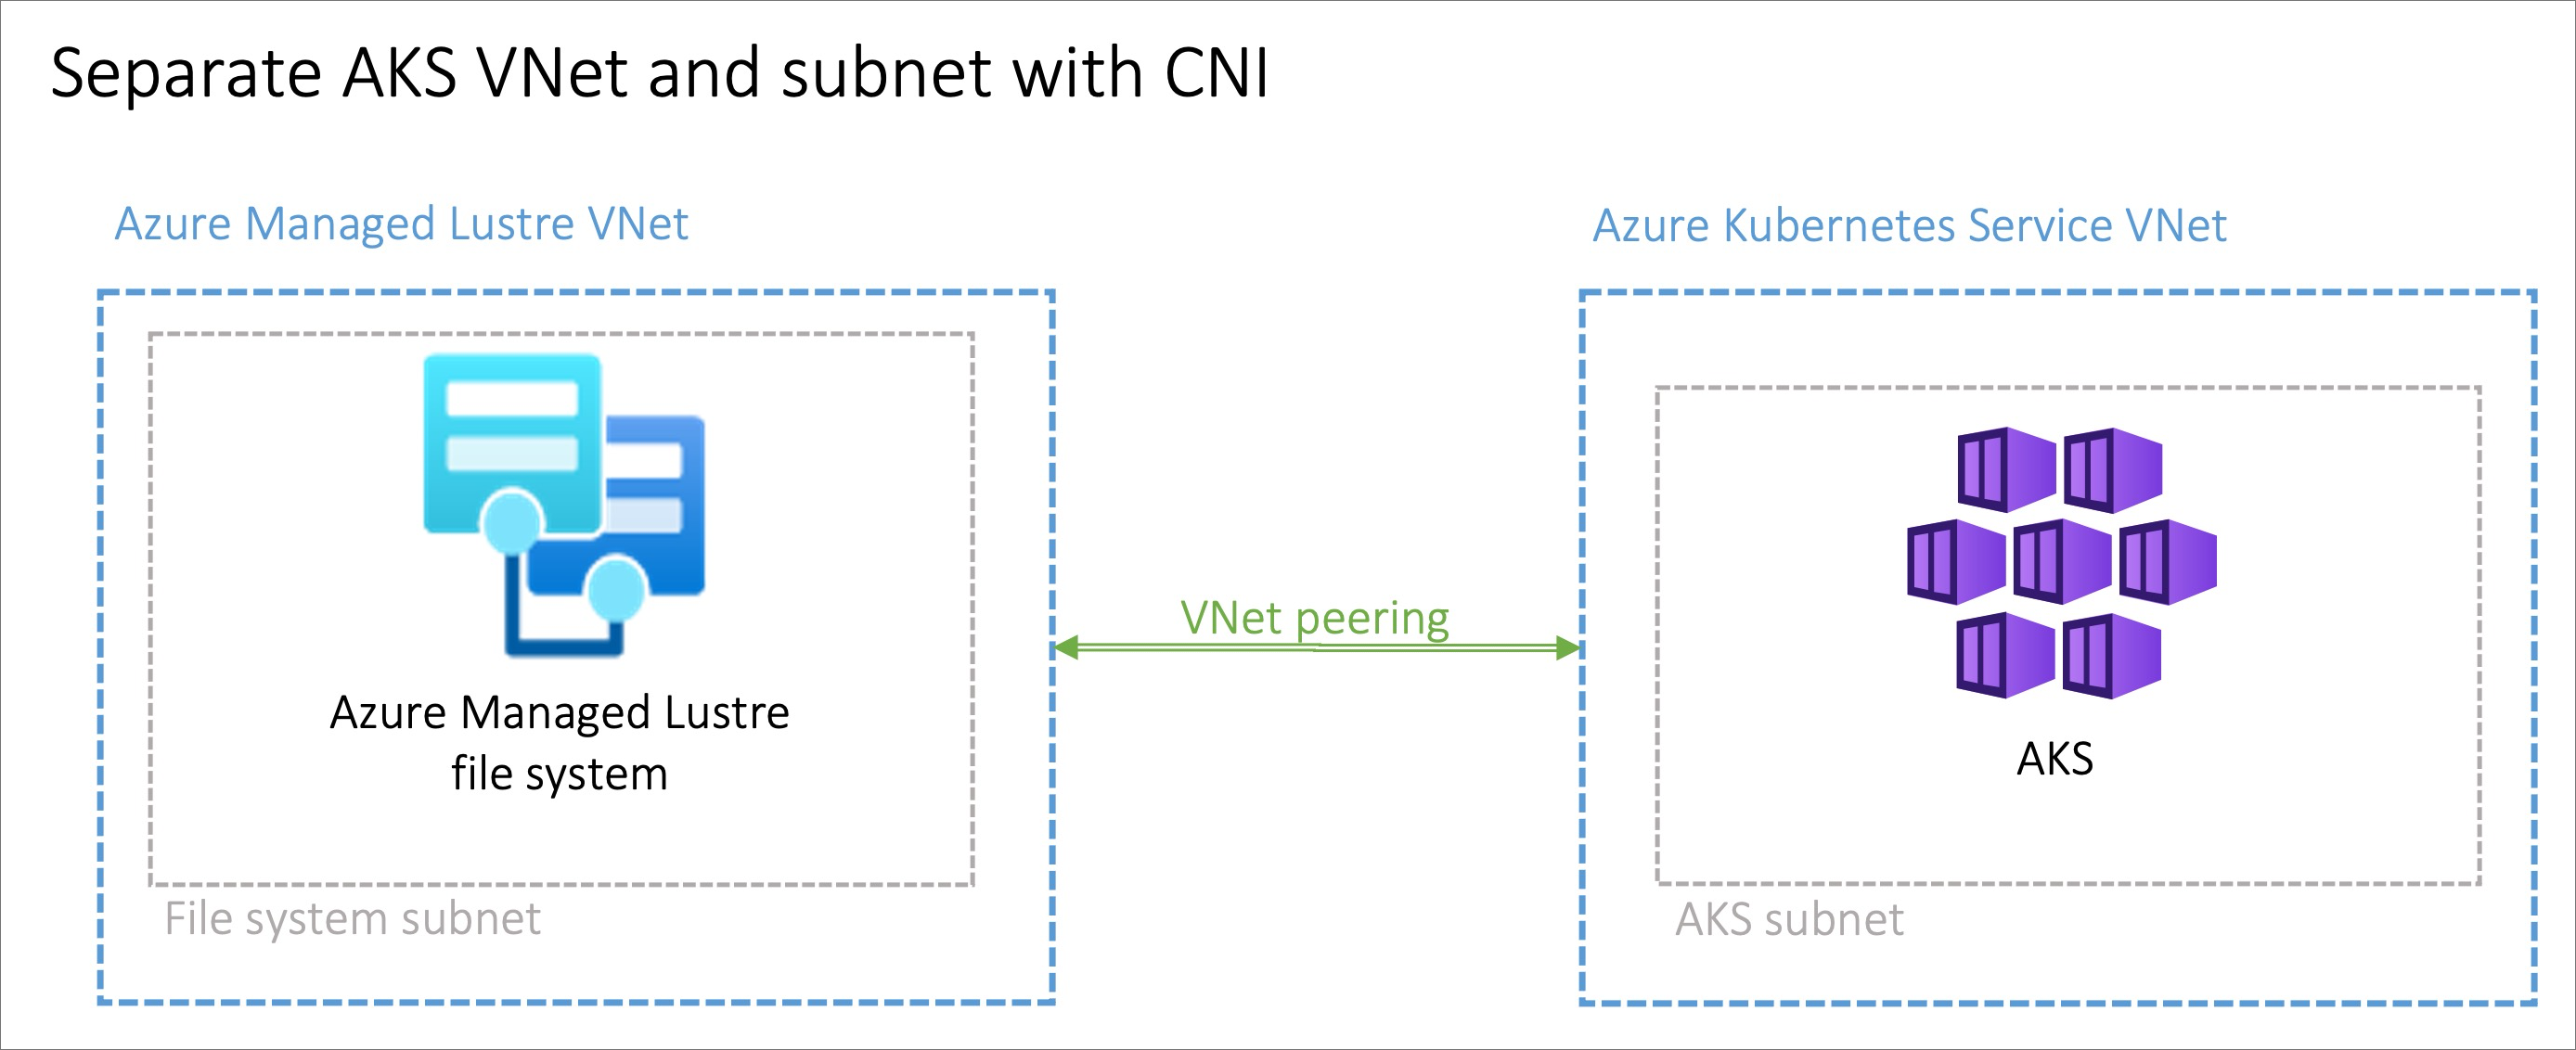 Biri Azure Yönetilen Lustre, diğeri AKS için olmak üzere iki sanal ağı ve bunları bağlayan bir sanal ağ eşleme oklarını gösteren diyagram.